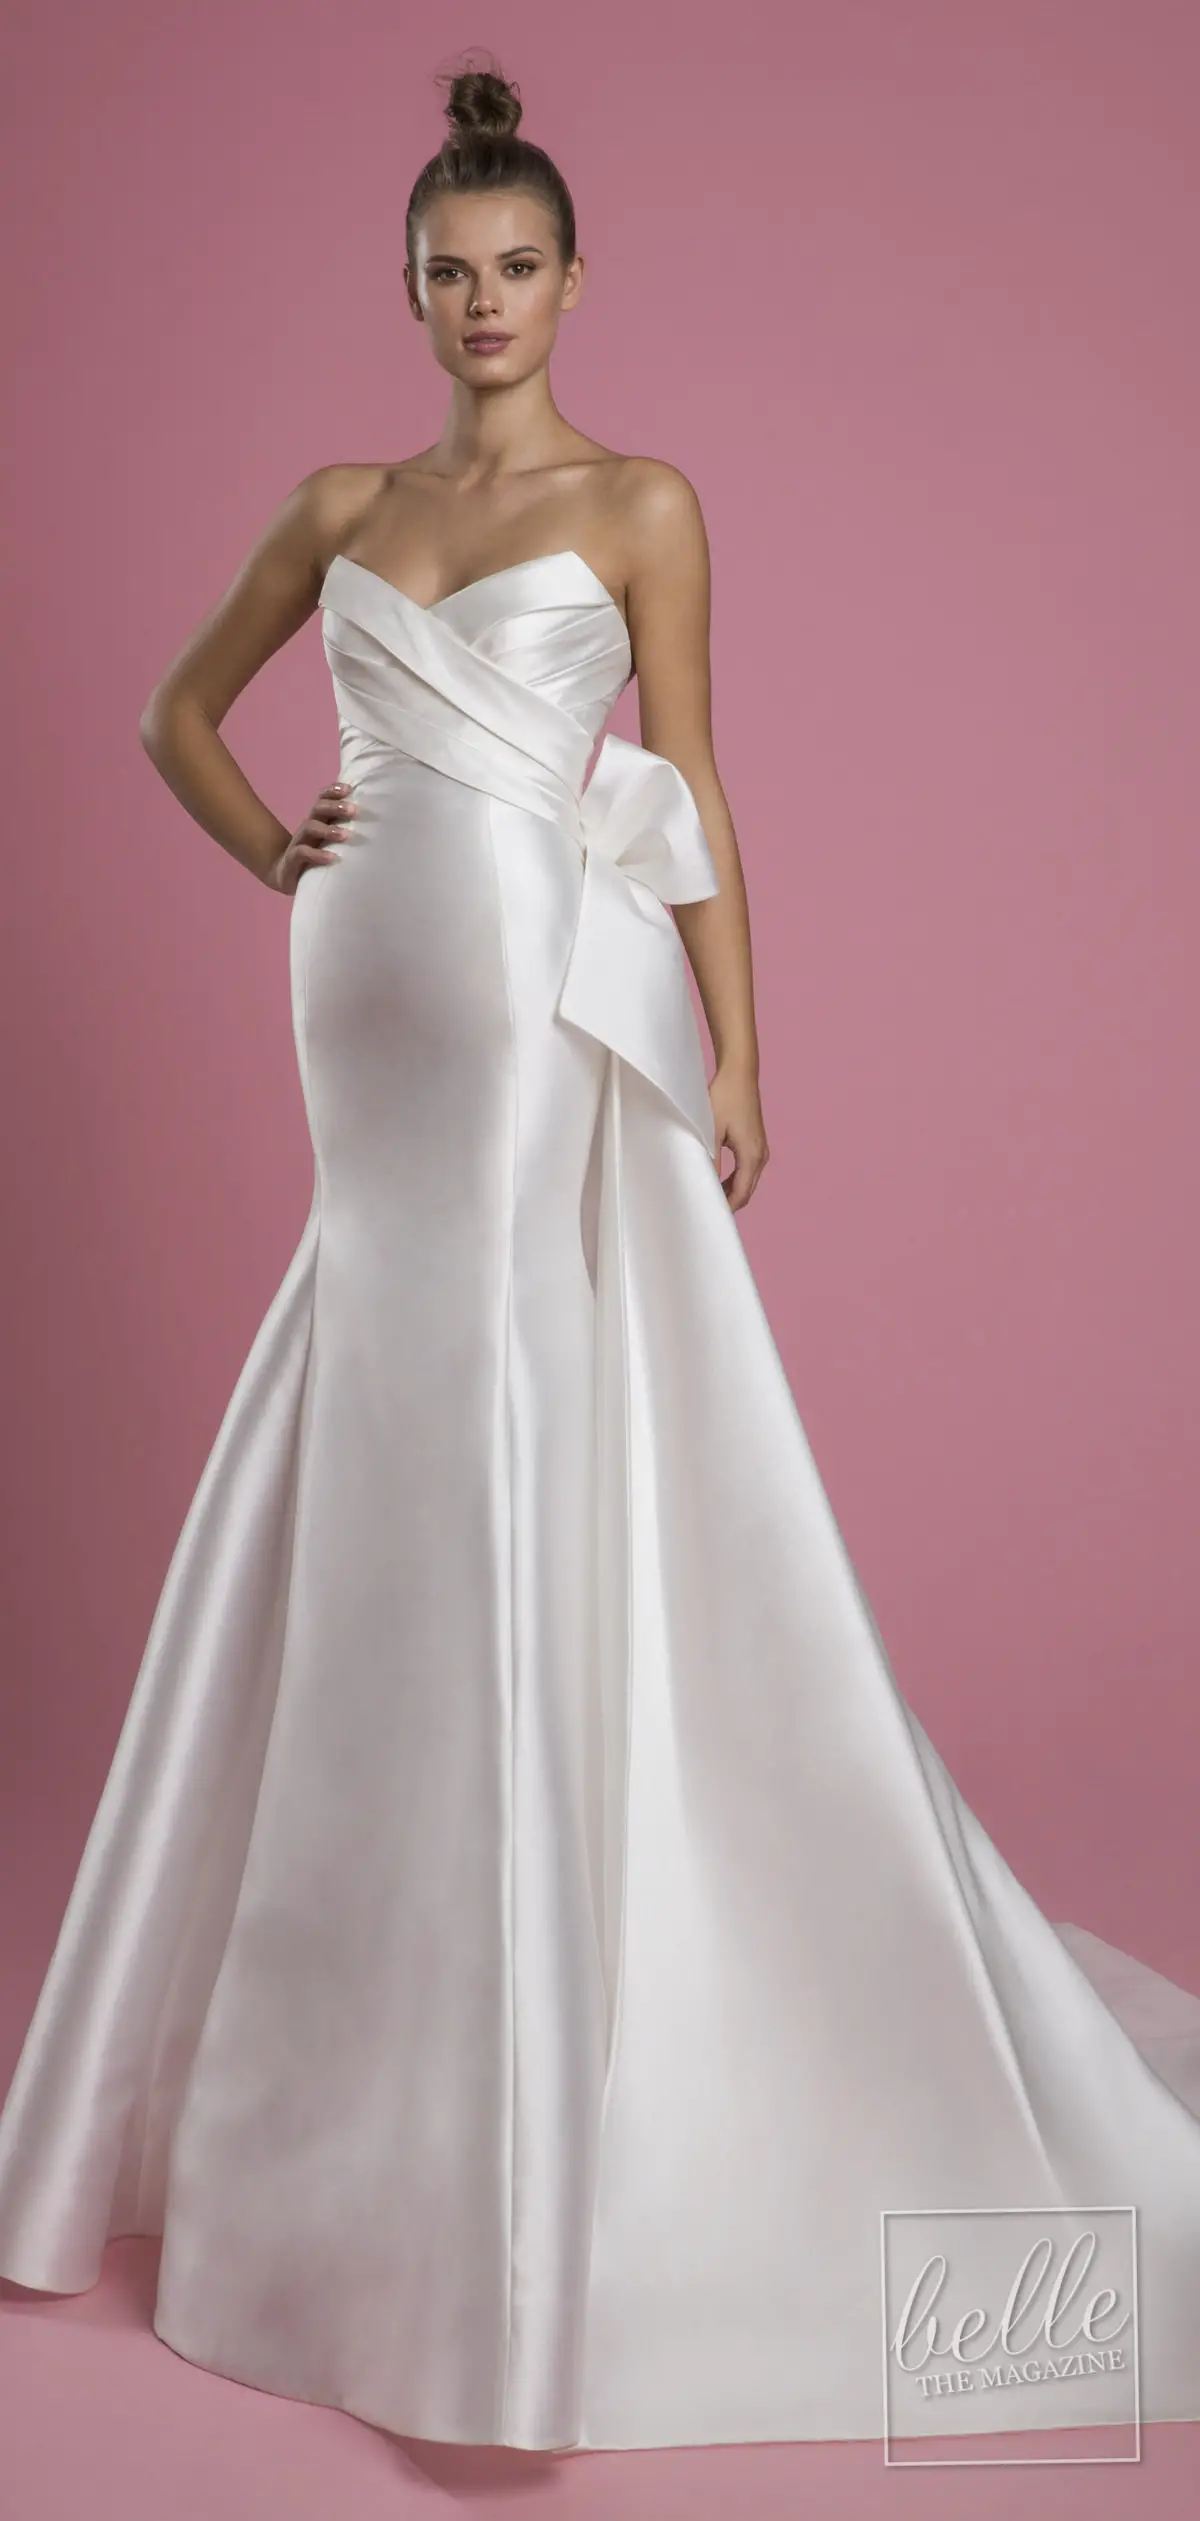 Wedding dress trends 2021 - Minimalist gown - PNINA TORNAI